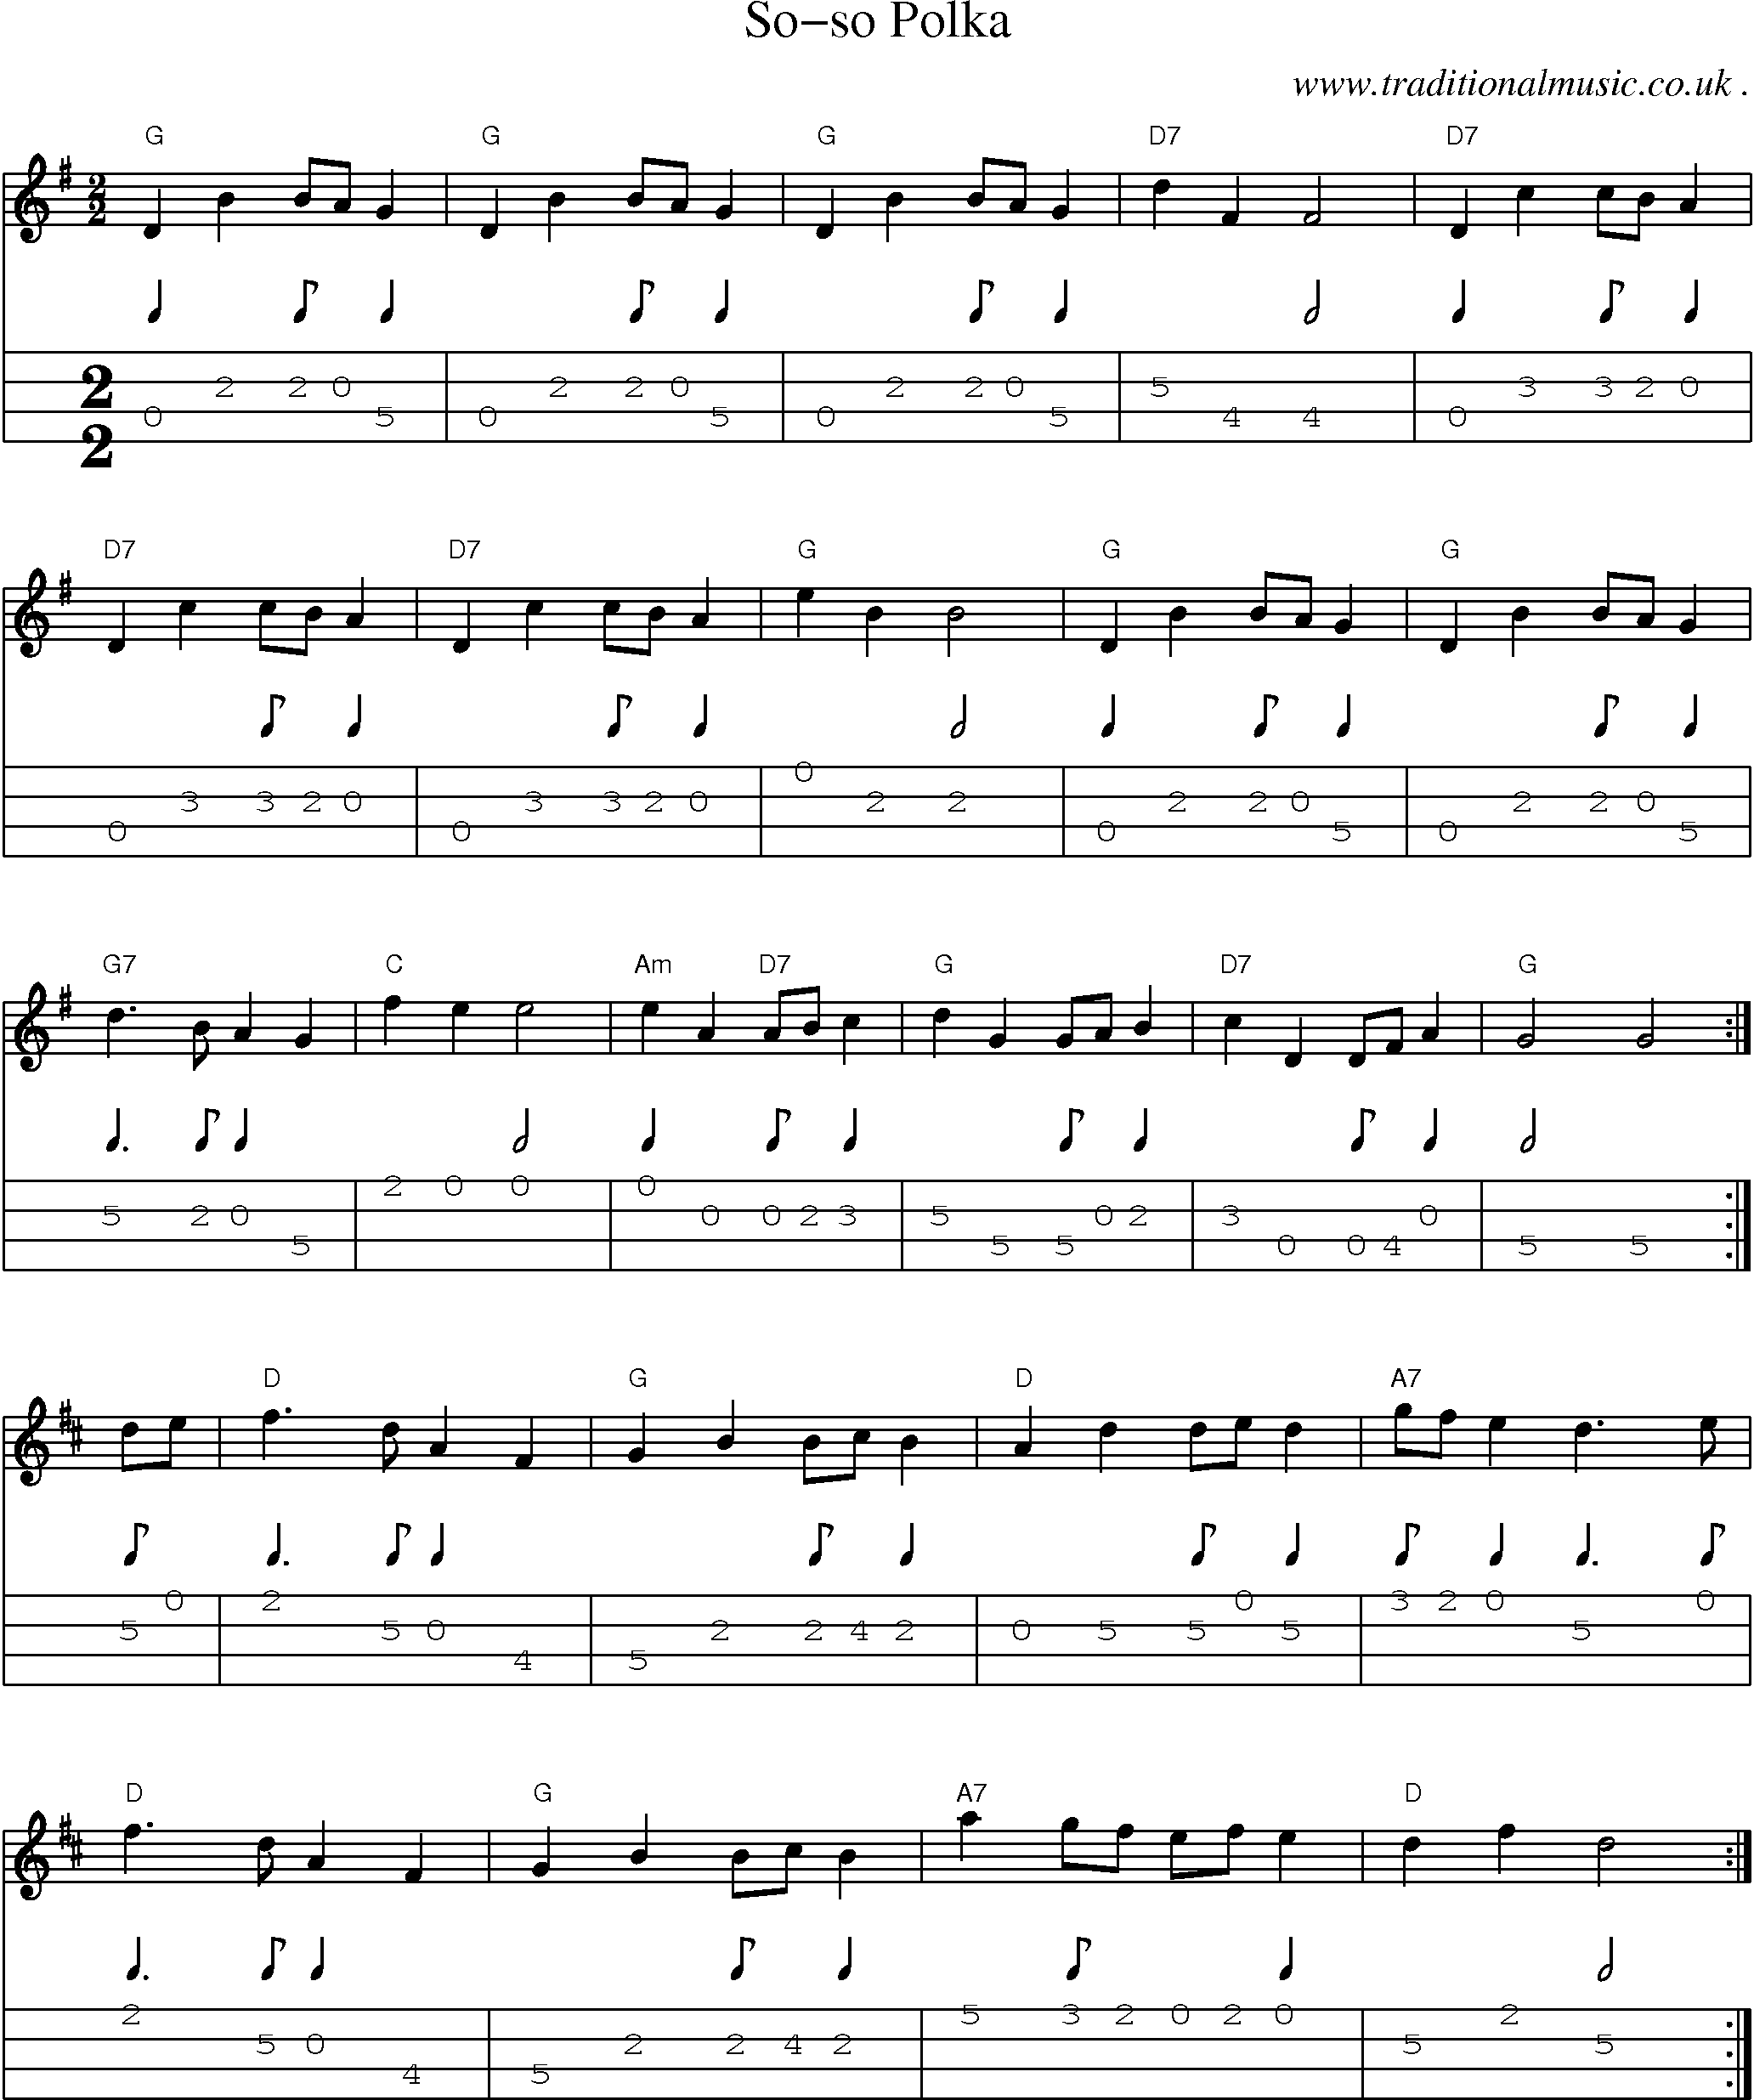 Sheet-Music and Mandolin Tabs for So-so Polka